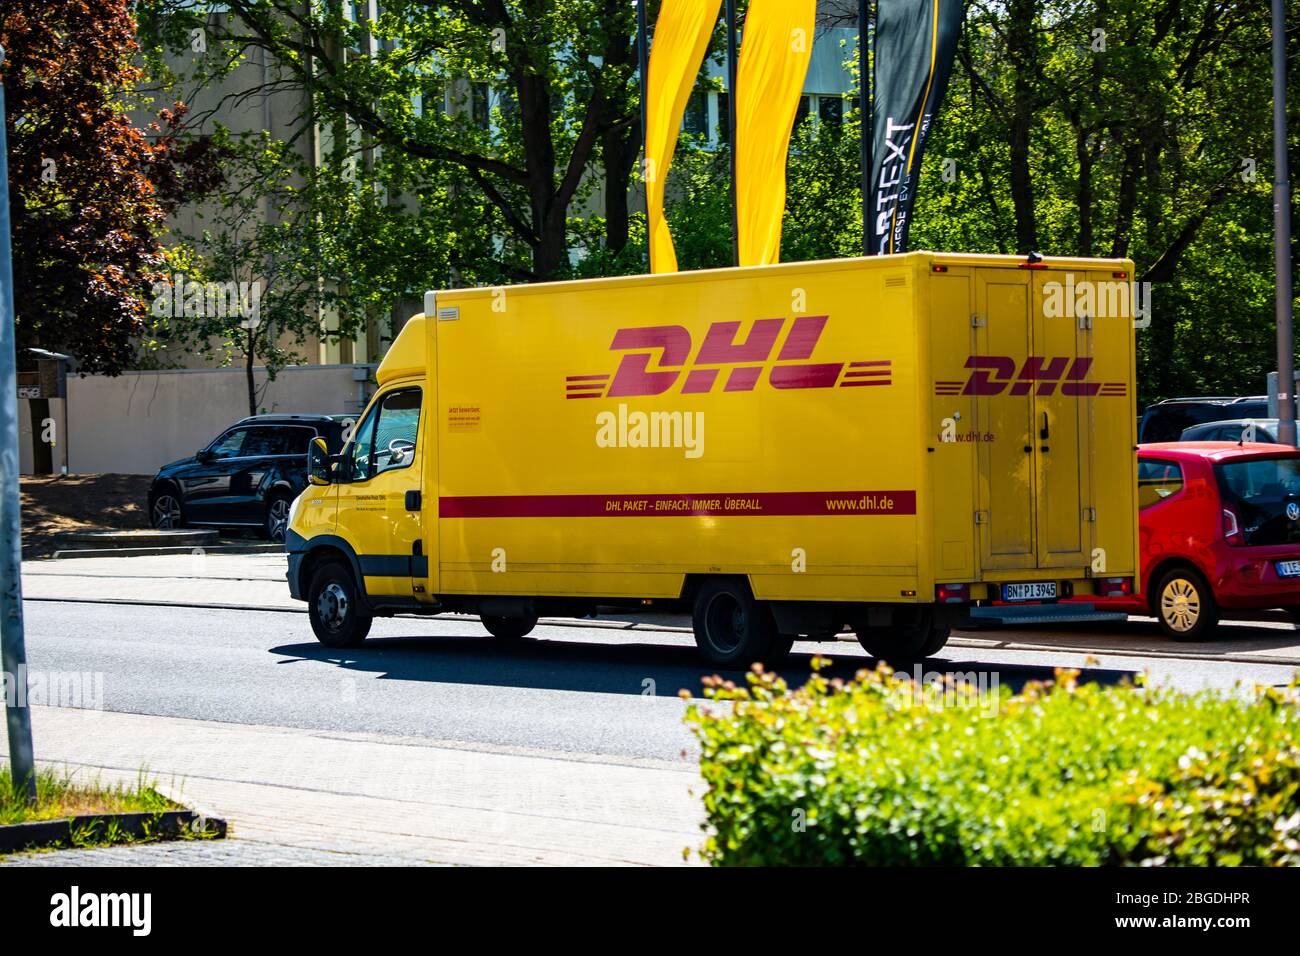 Ein Fahrzeug des Paketdienstleisters DHL liefert im Willicher Industriegebiet Pakete. Aktuell ist DHL wegen der Corona-Krise belastet austero. Foto de stock